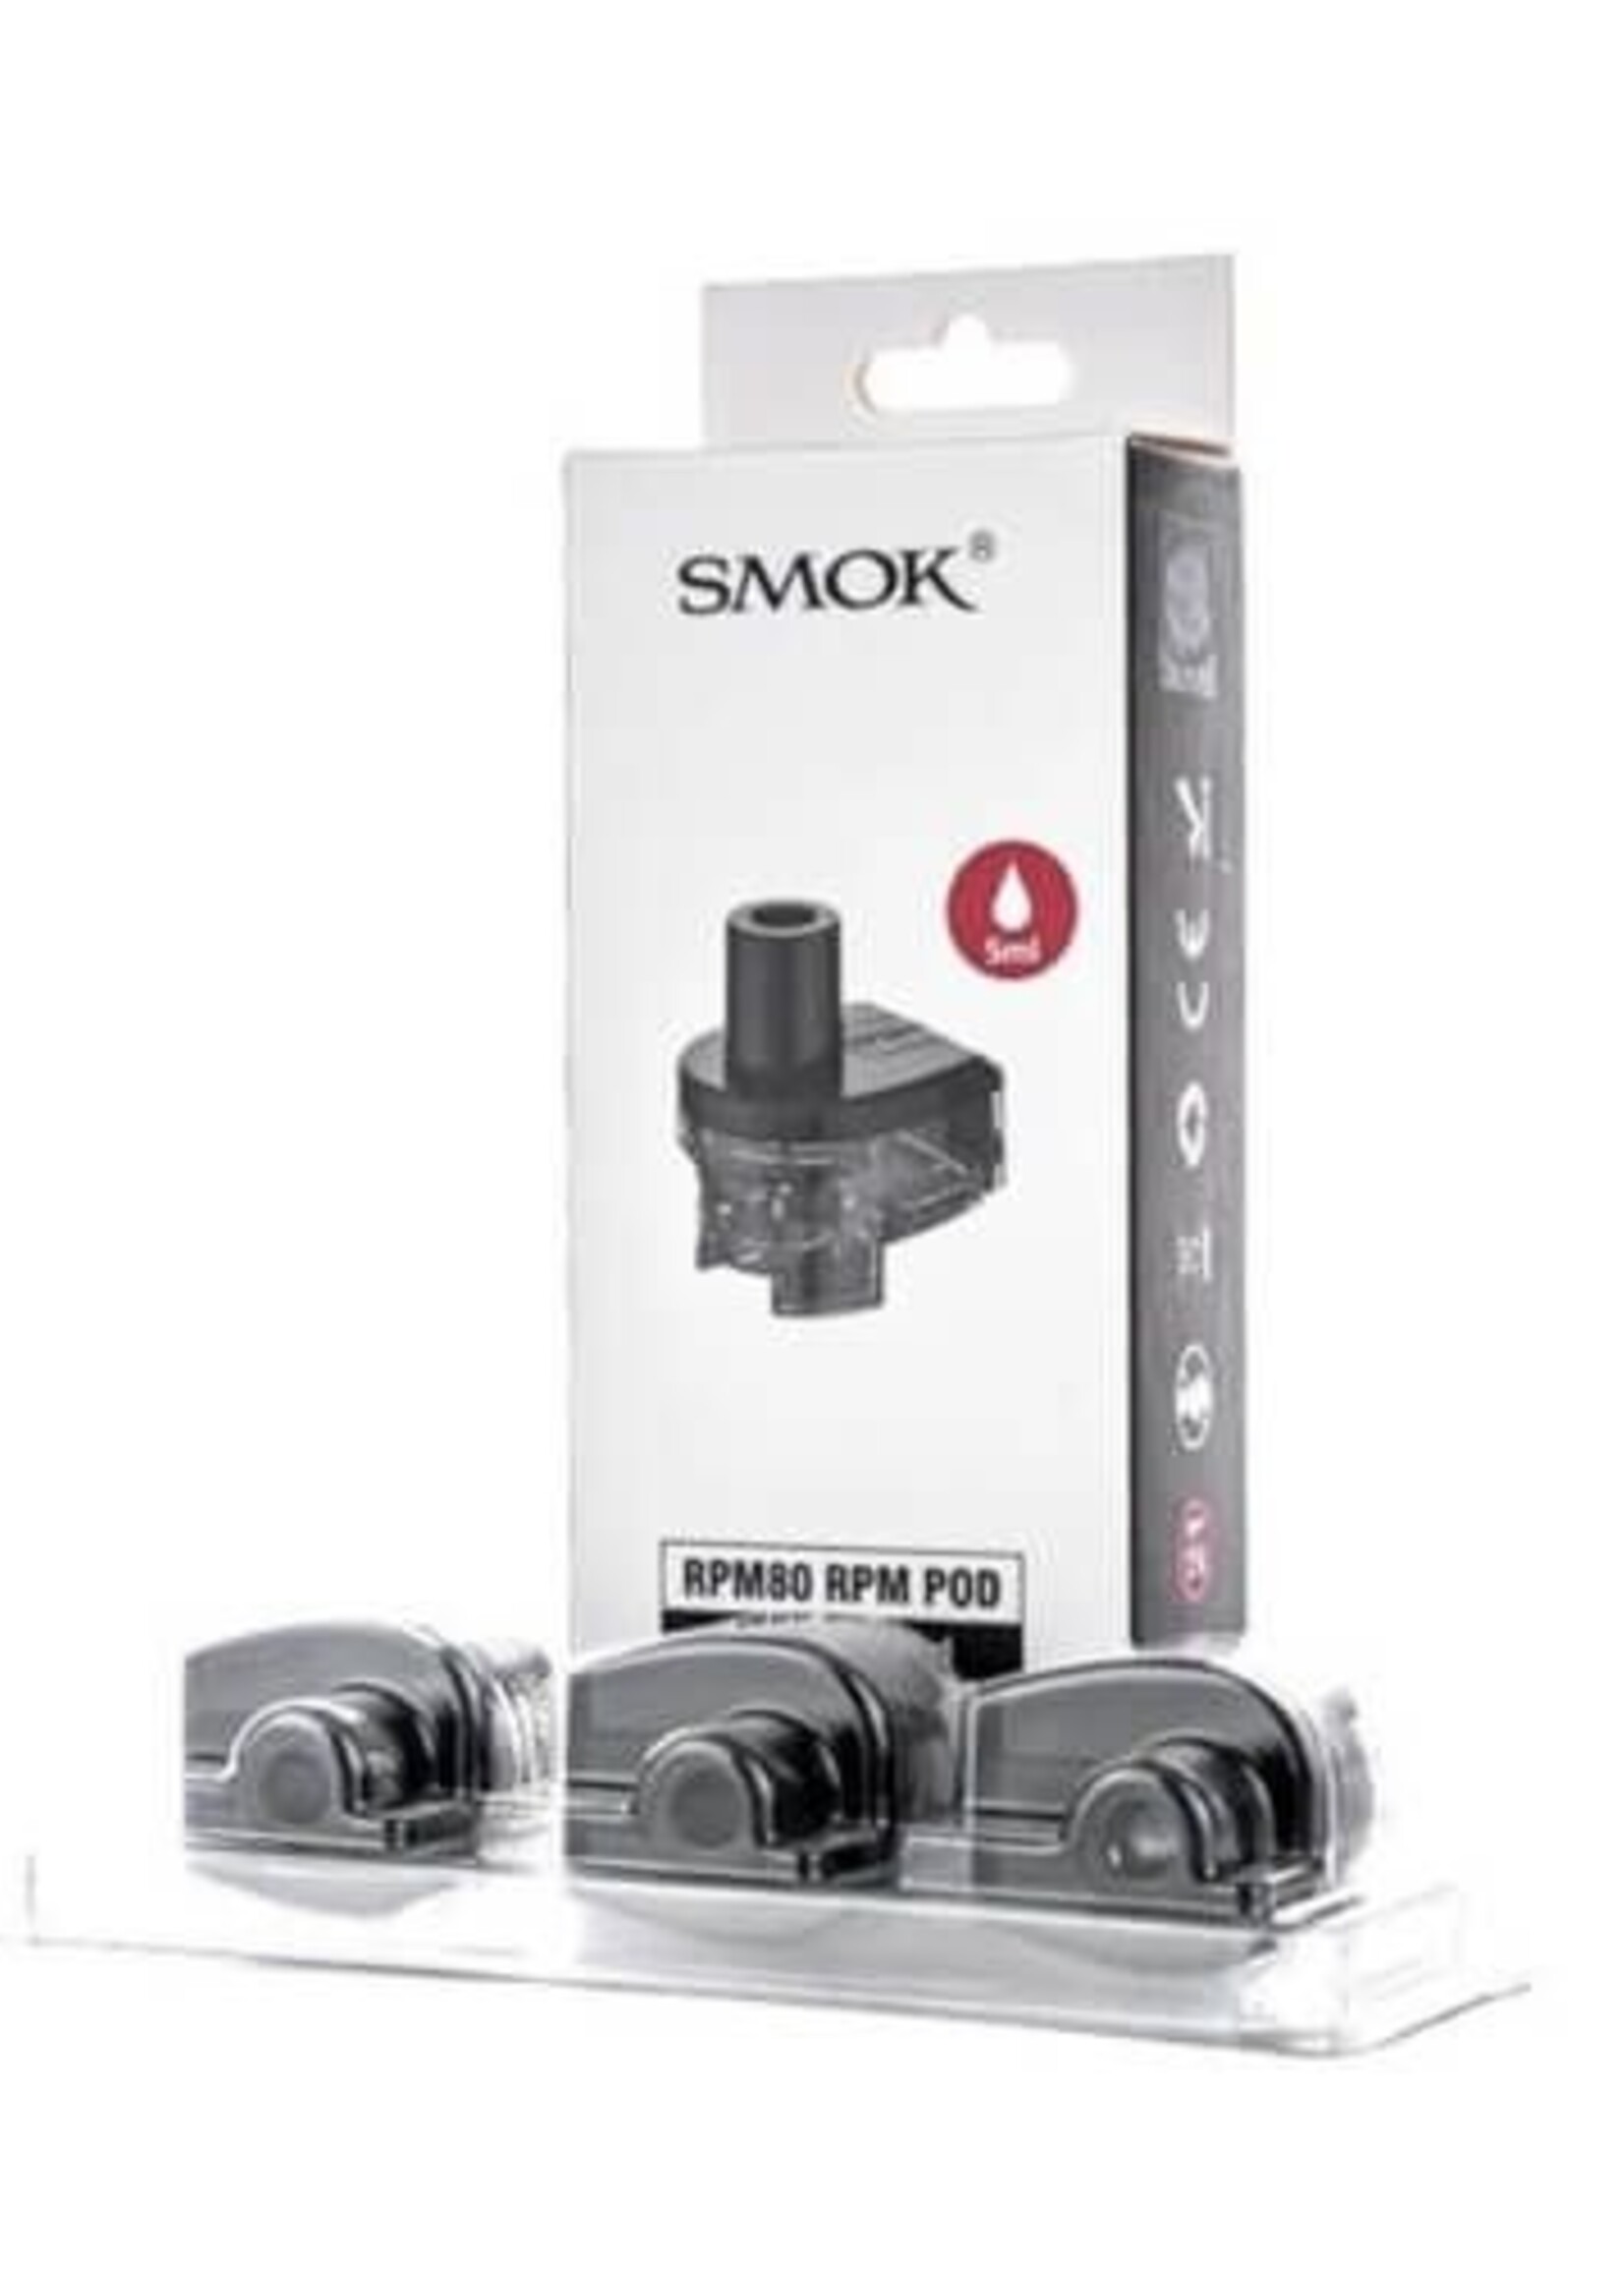 SMOK SMOK RMP 80 PODS & COILS